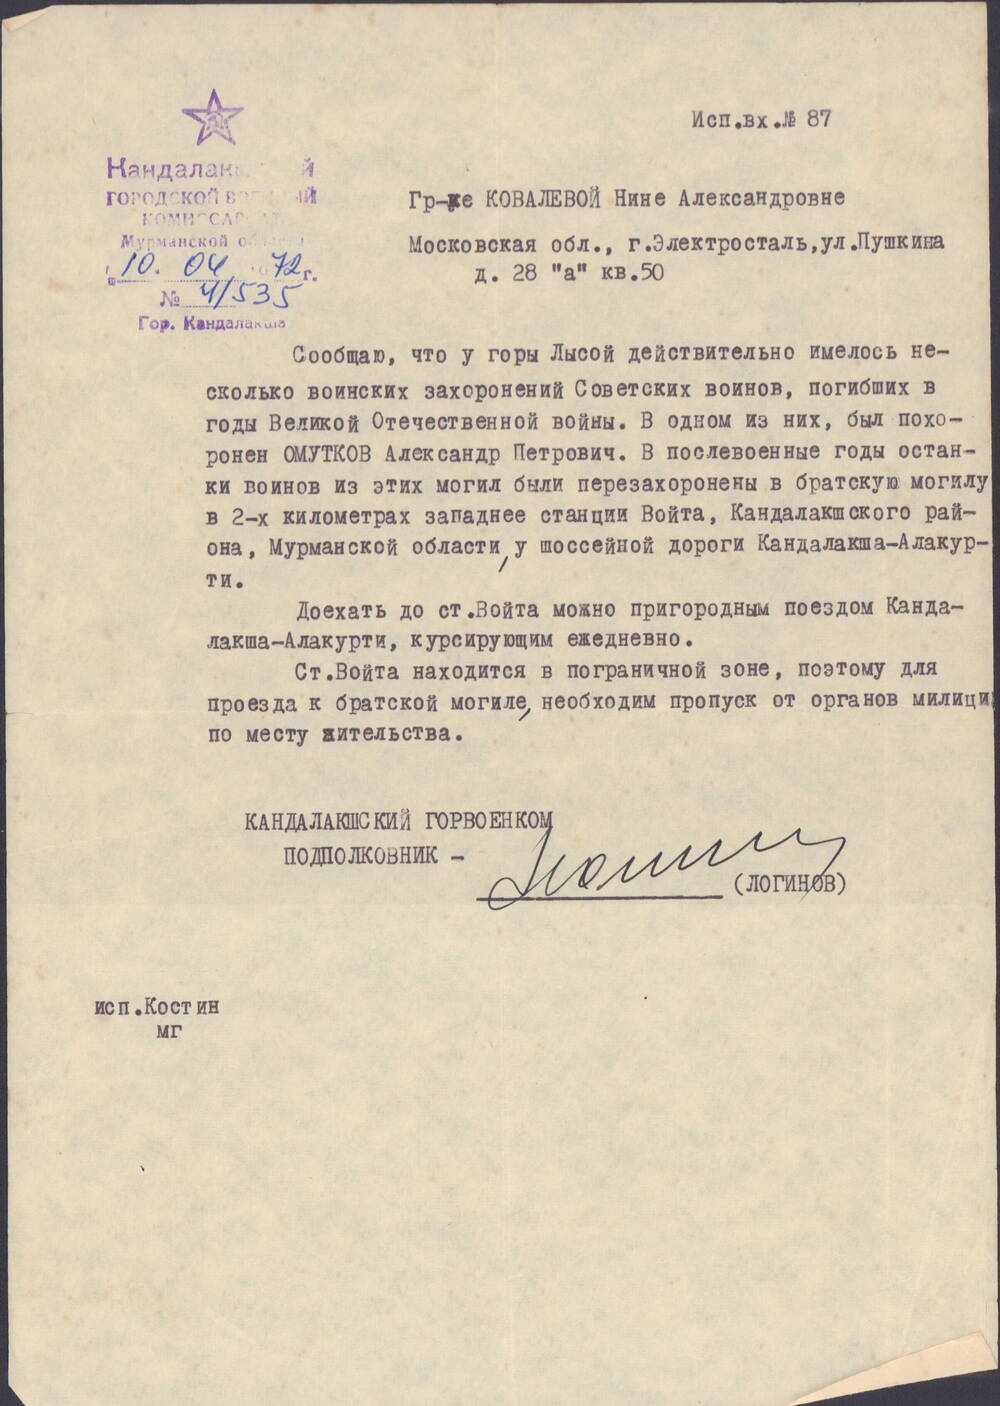 Письмо Ковалевой Нине Александровне, что у горы Лысой похоронен Омутков Александр Петрович